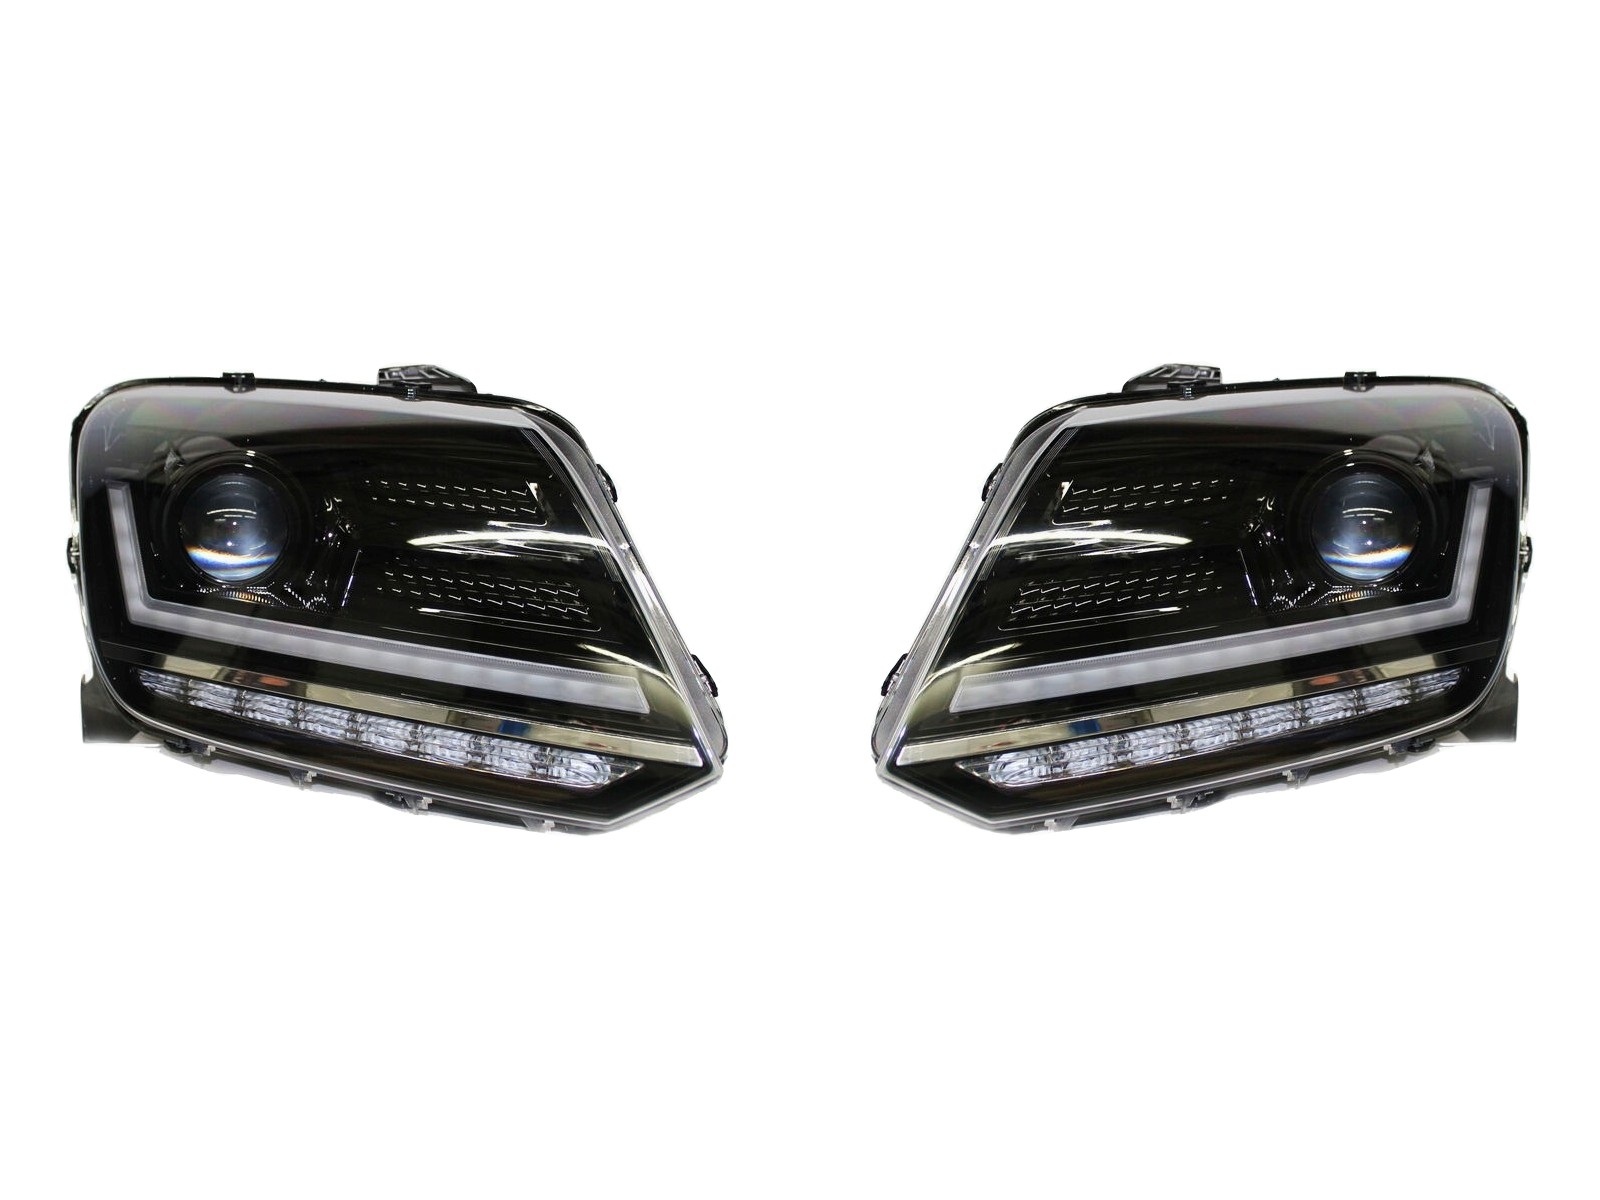 Osram LEDriving Full LED fényszórók VW Amarok (2010-től) Dinamikus szekvenciális irányjelző lámpákhoz, fekete